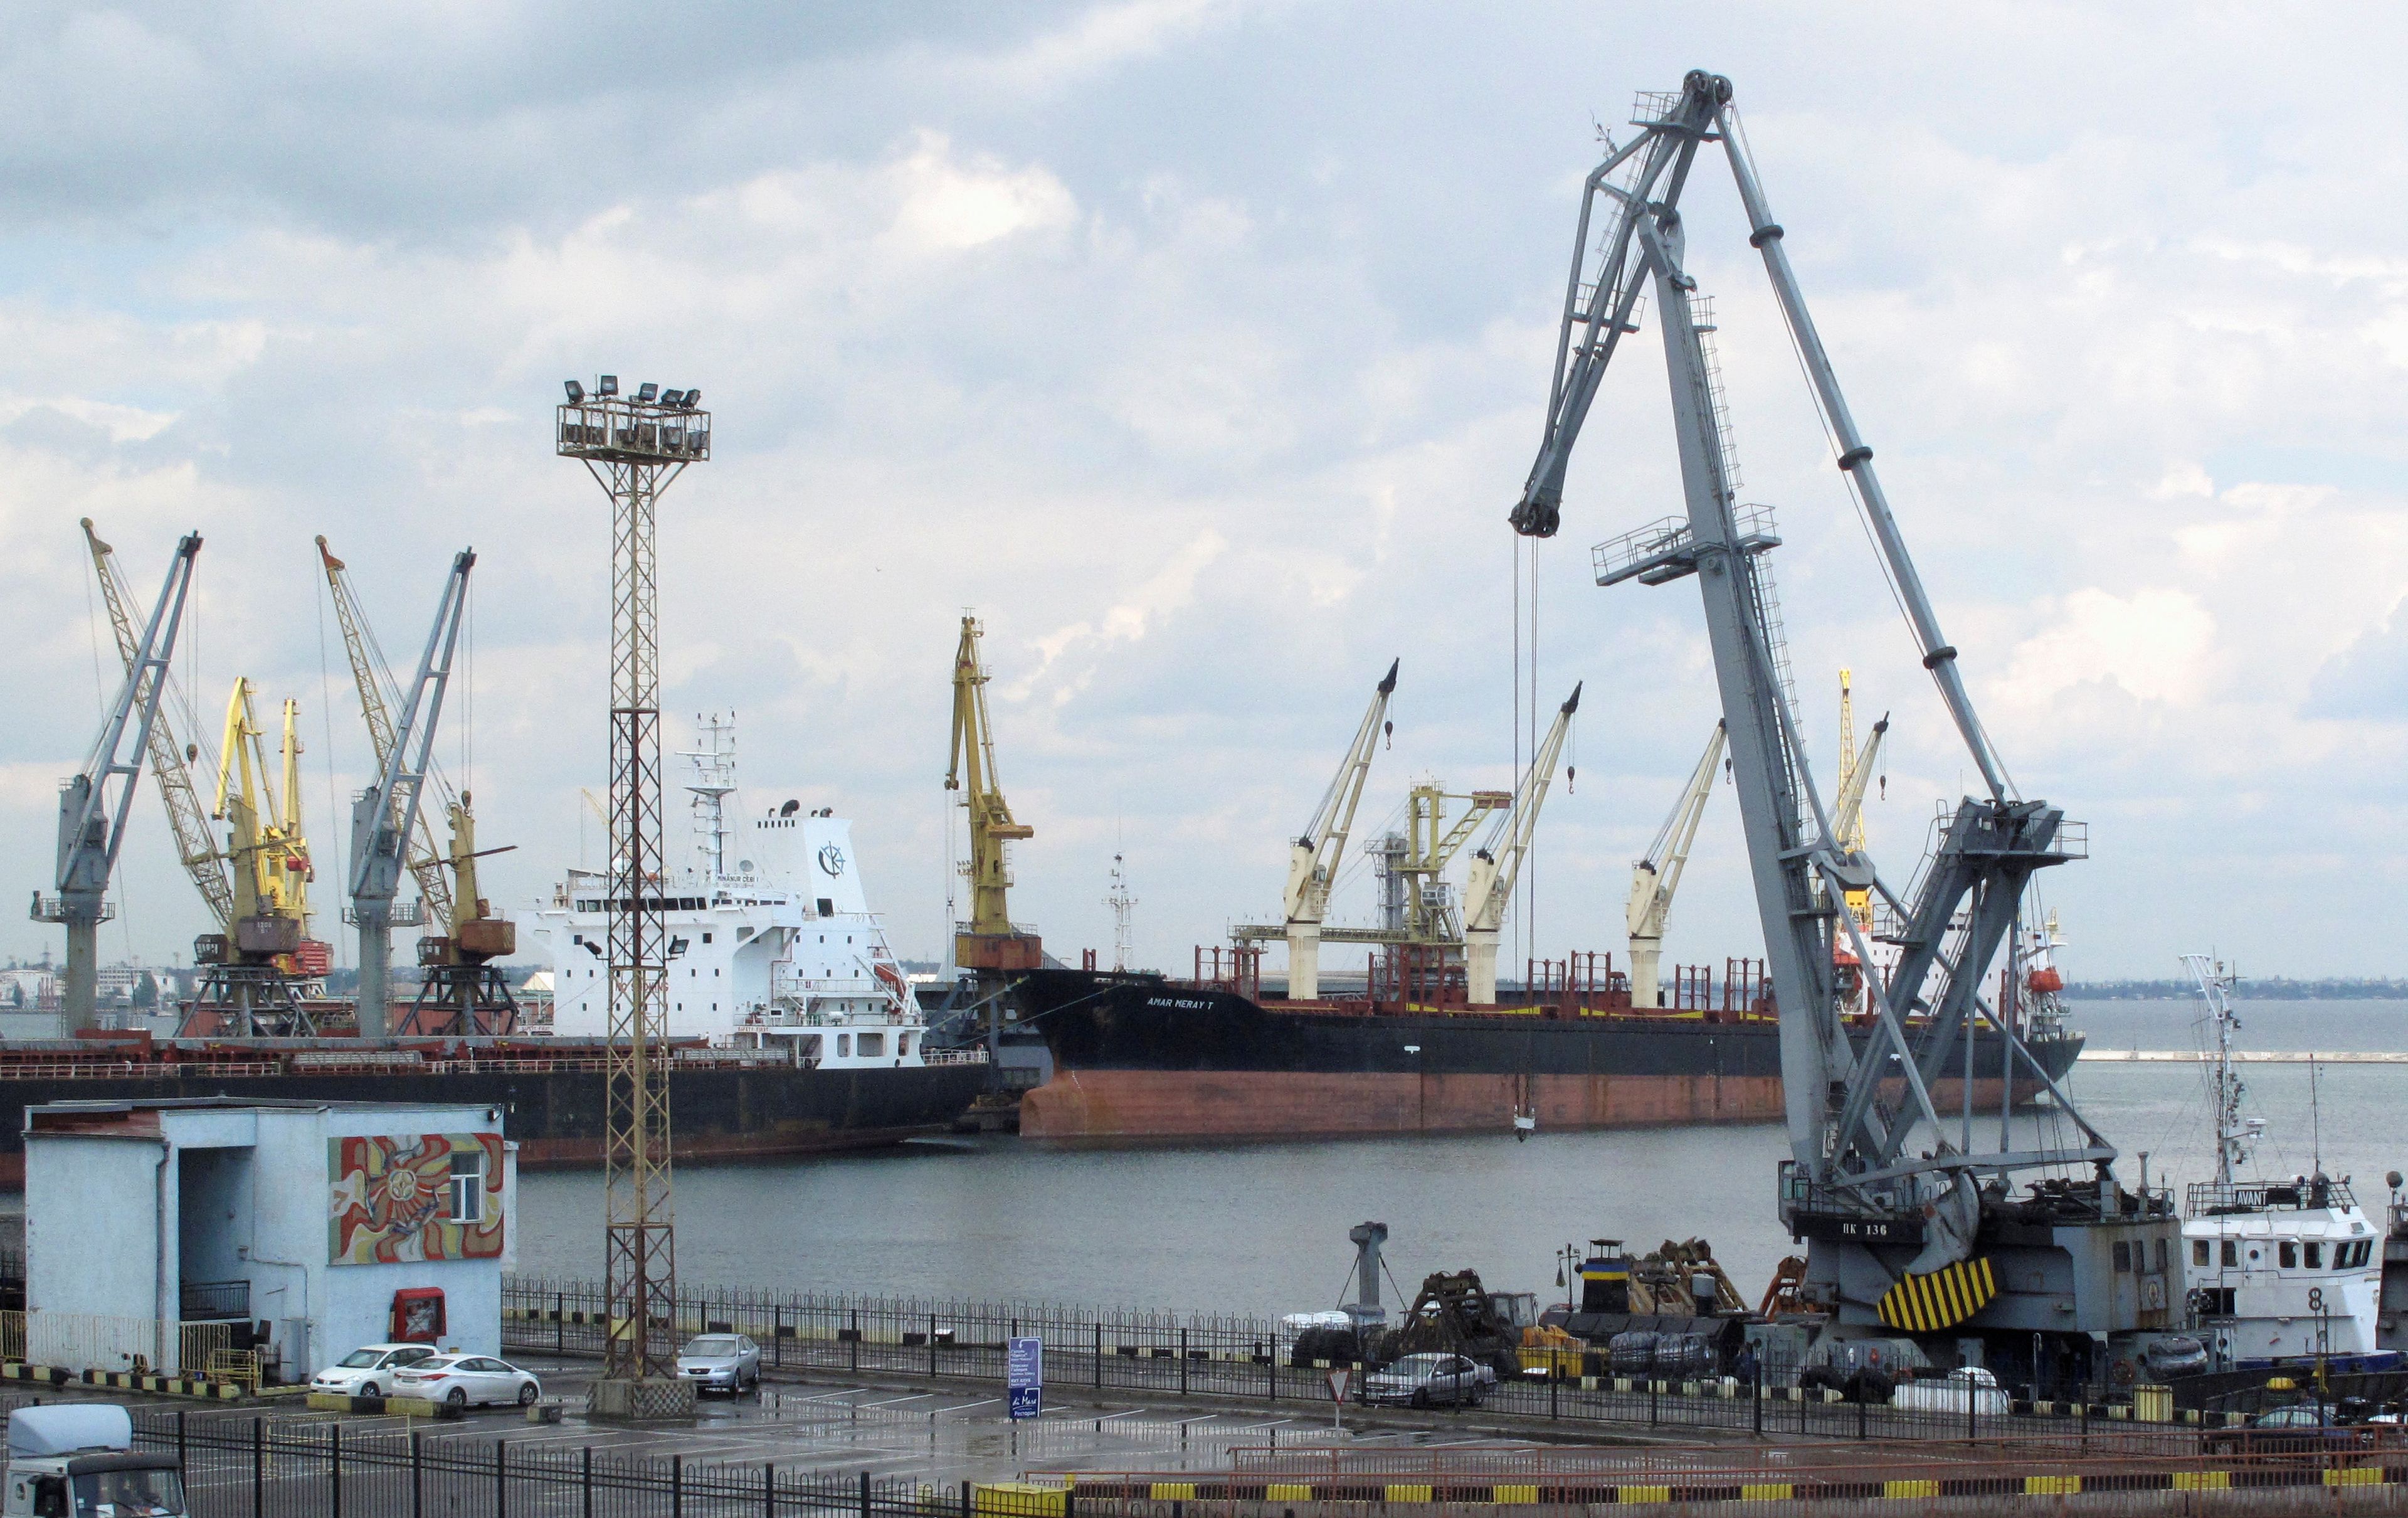 Vista general del puerto comercial de Odessa, Ucrania